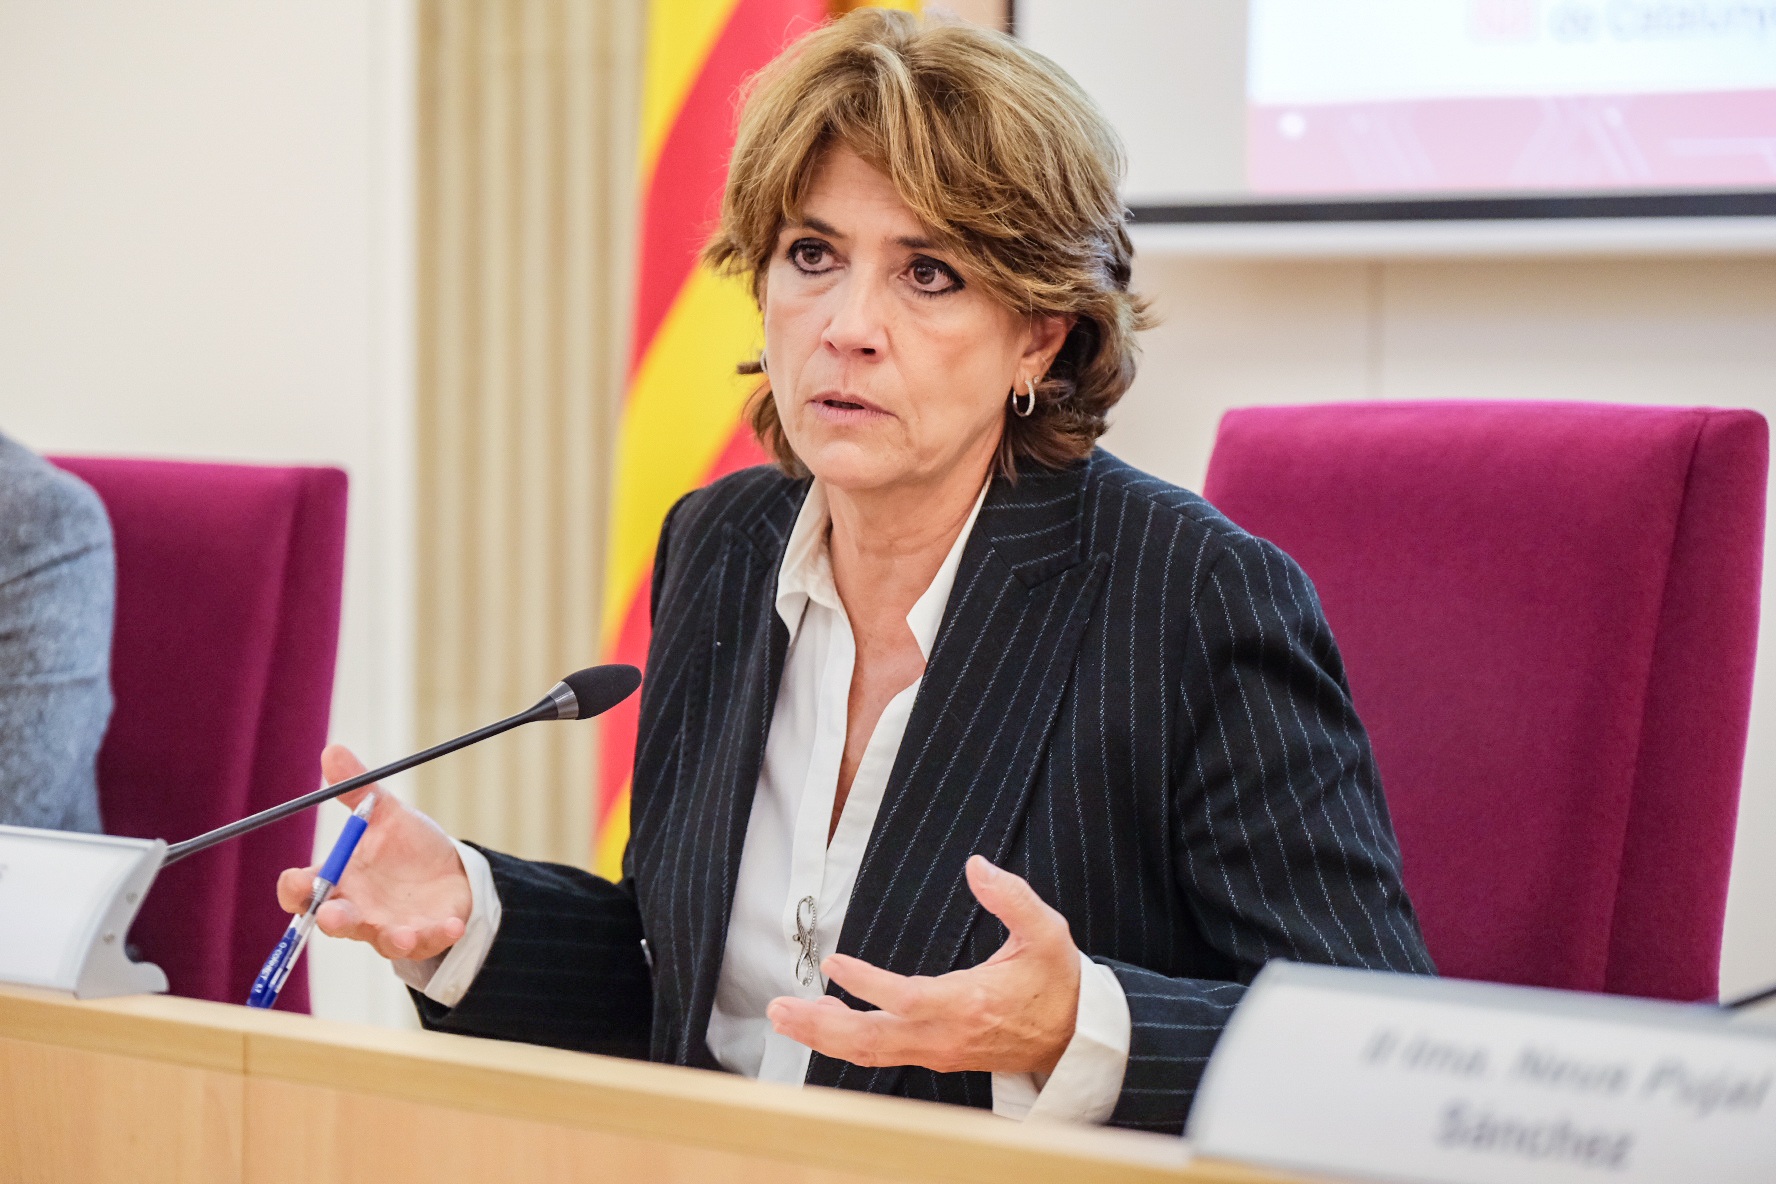 La fiscal Dolores Delgado afirma que "si Espanya no dona resposta a la memòria, vulnera drets humans"